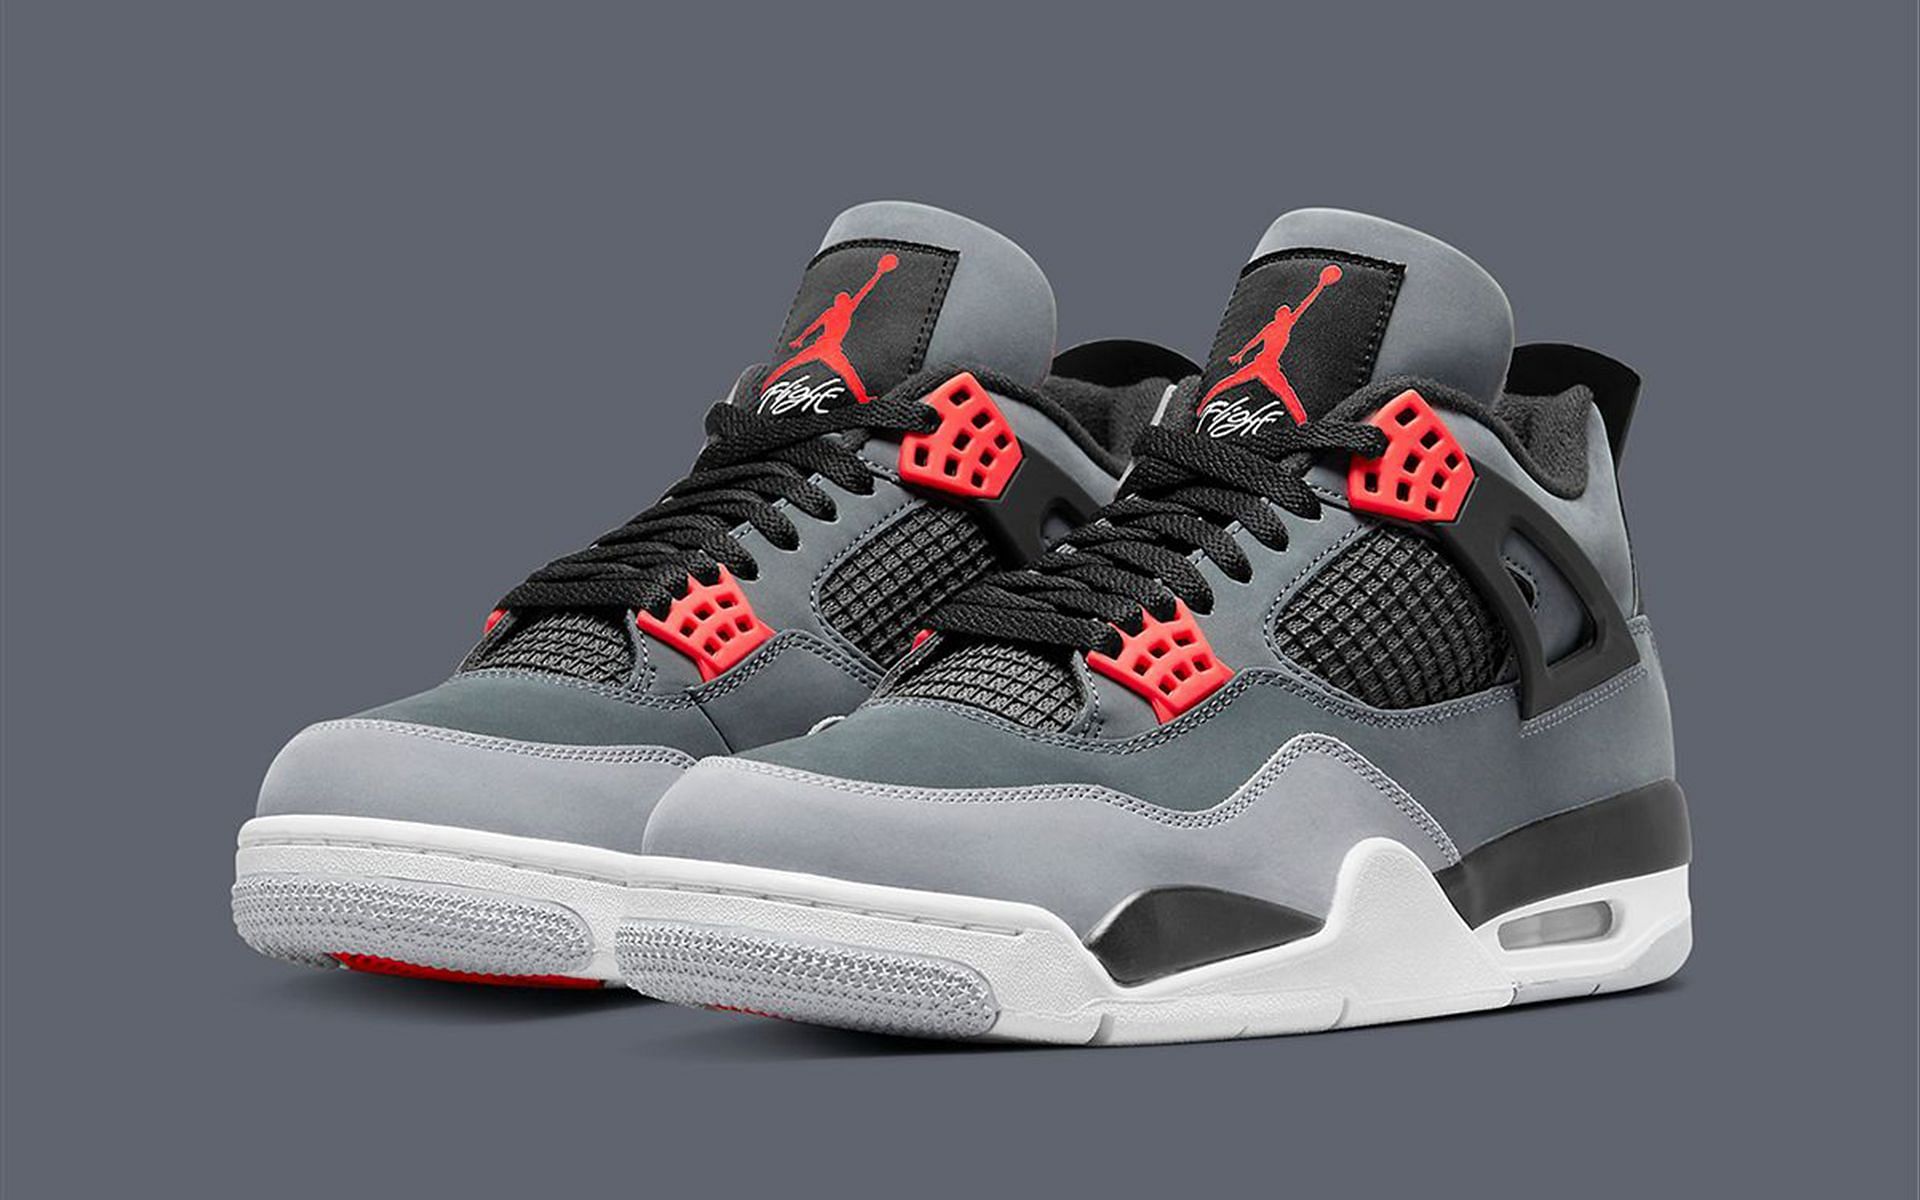 Air Jordan 4 Infrared shoes (Image via Nike)